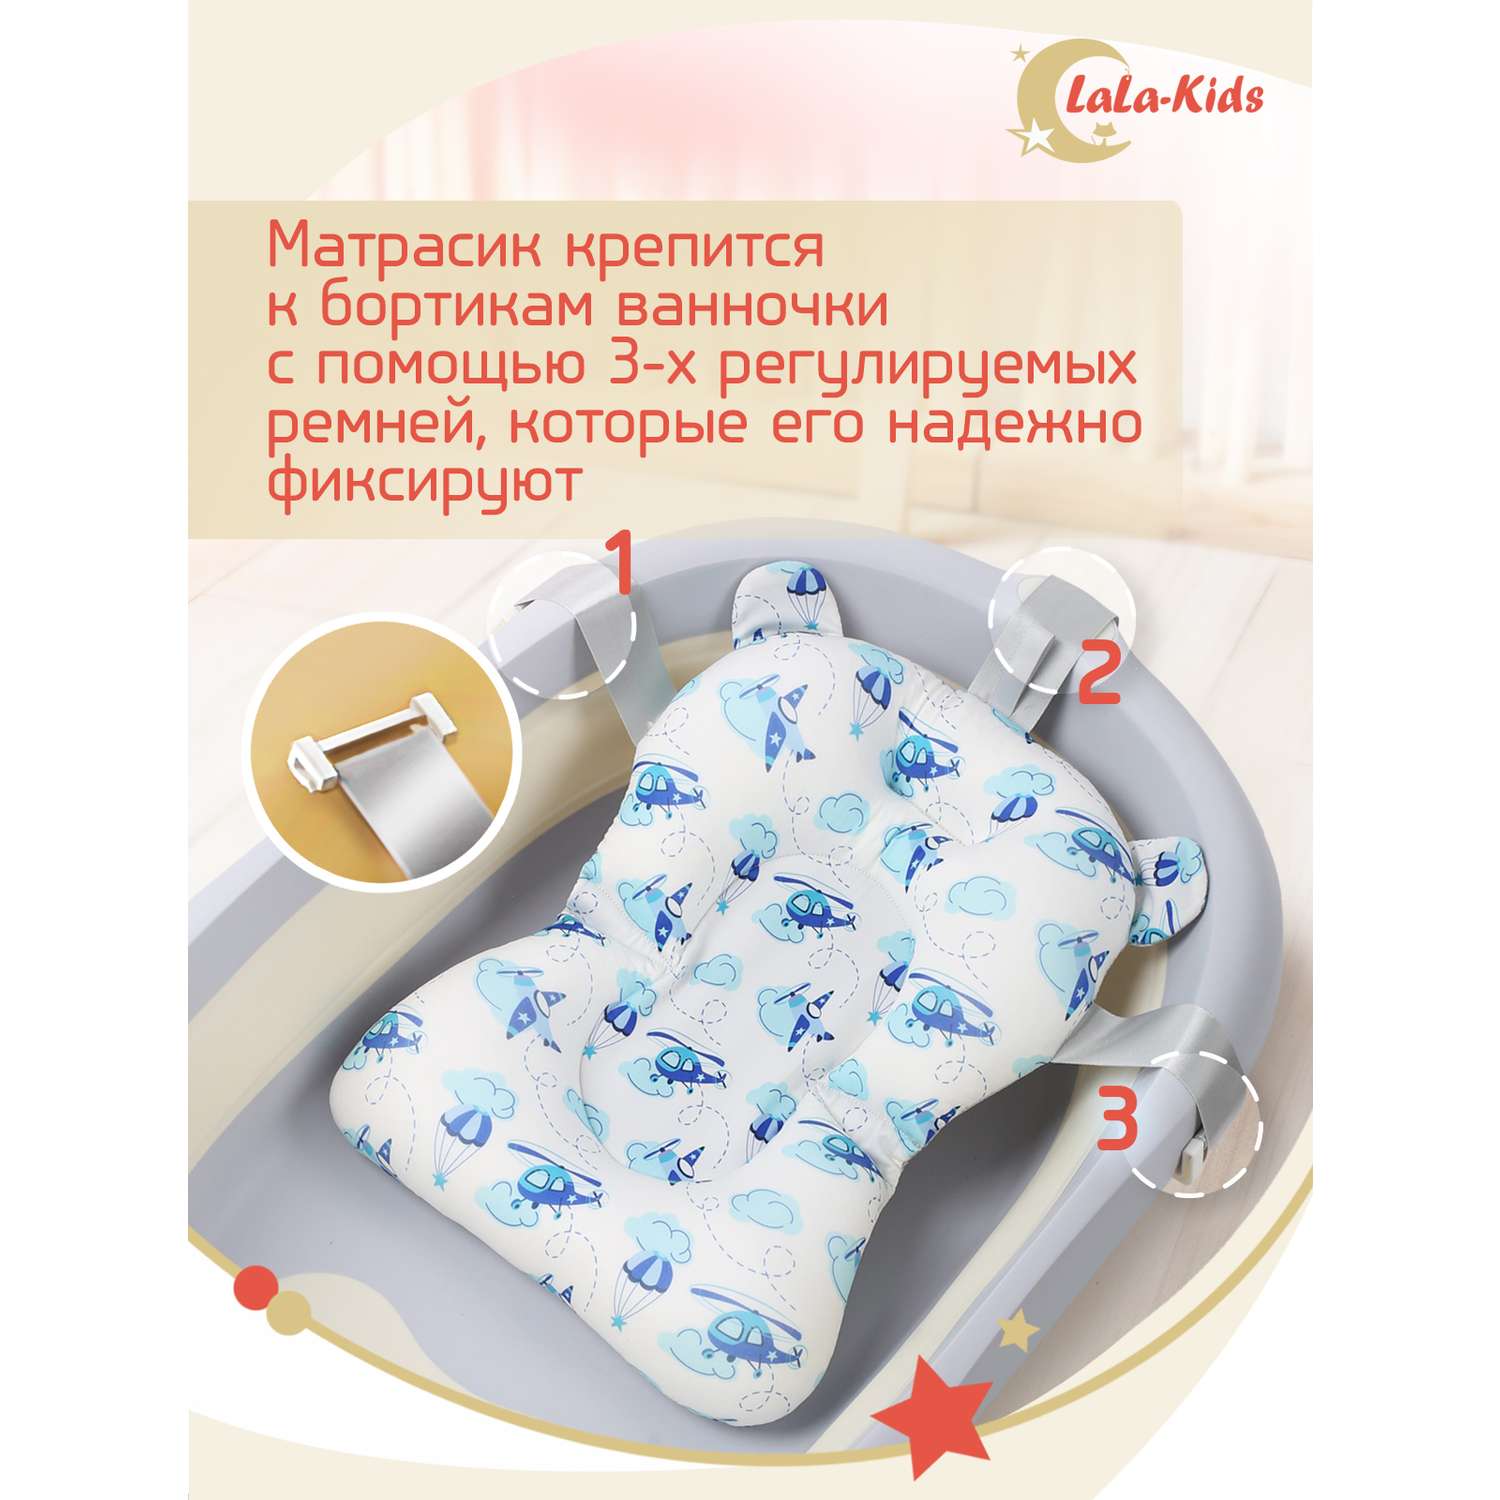 Складная ванночка LaLa-Kids для купания новорожденных с матрасиком в комплекте - фото 15